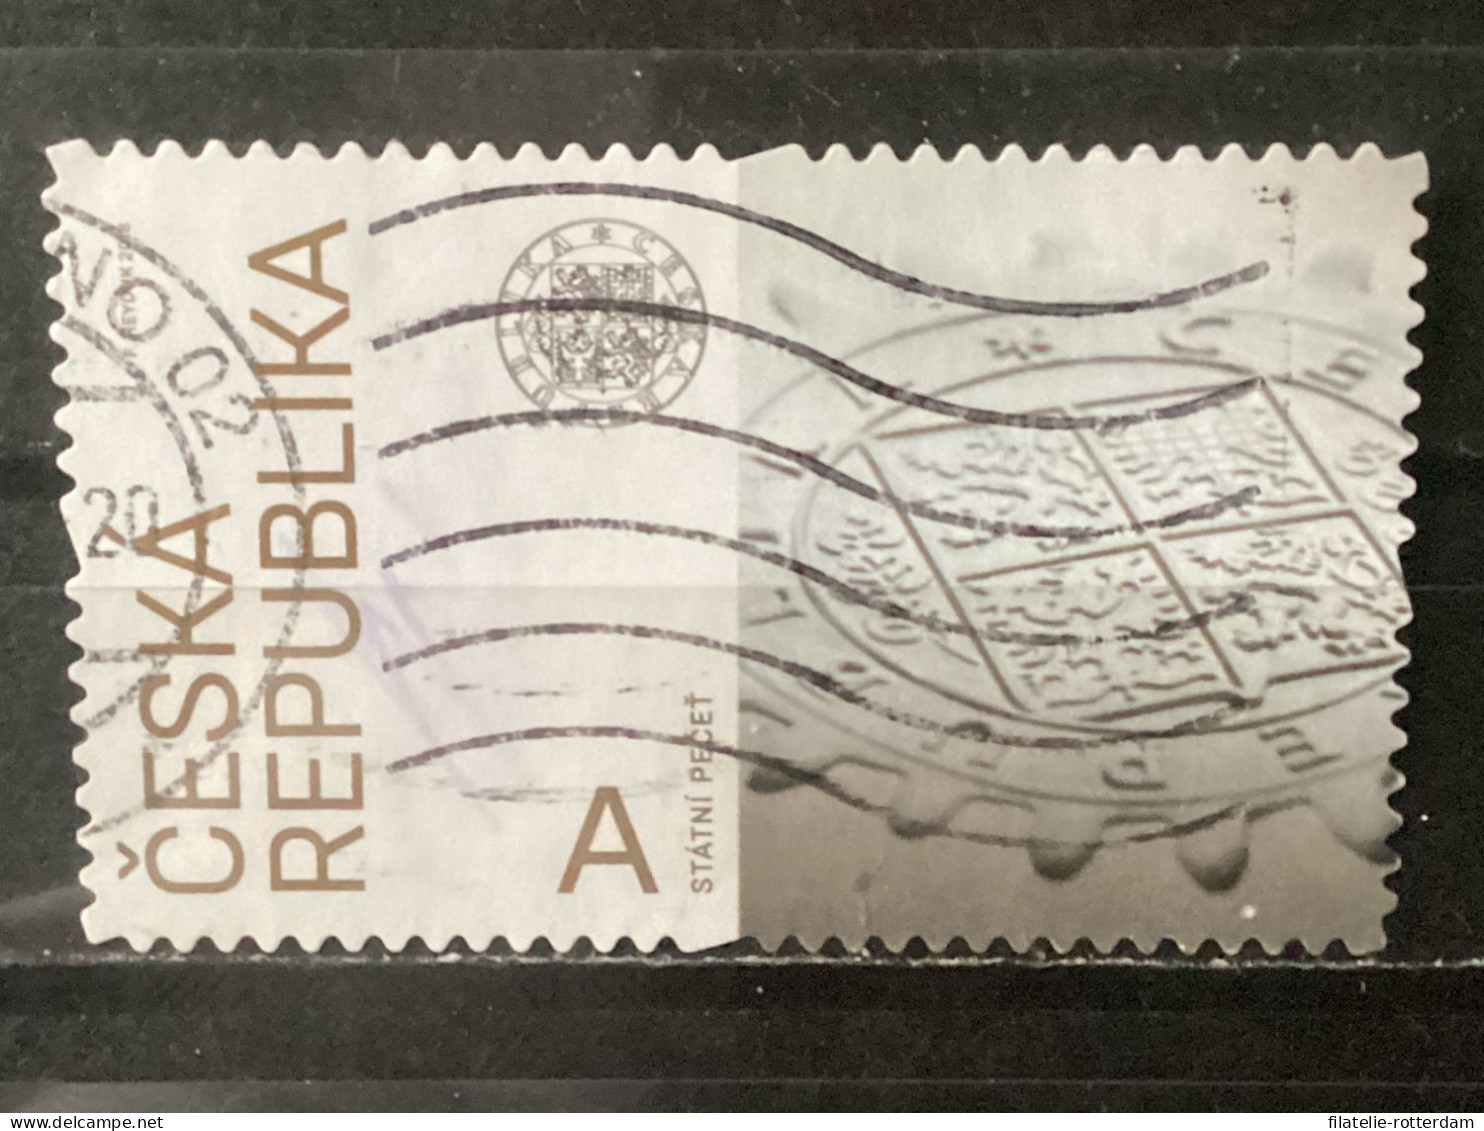 Czech Republic / Tsjechië - National Symbols (A) 2018 - Used Stamps